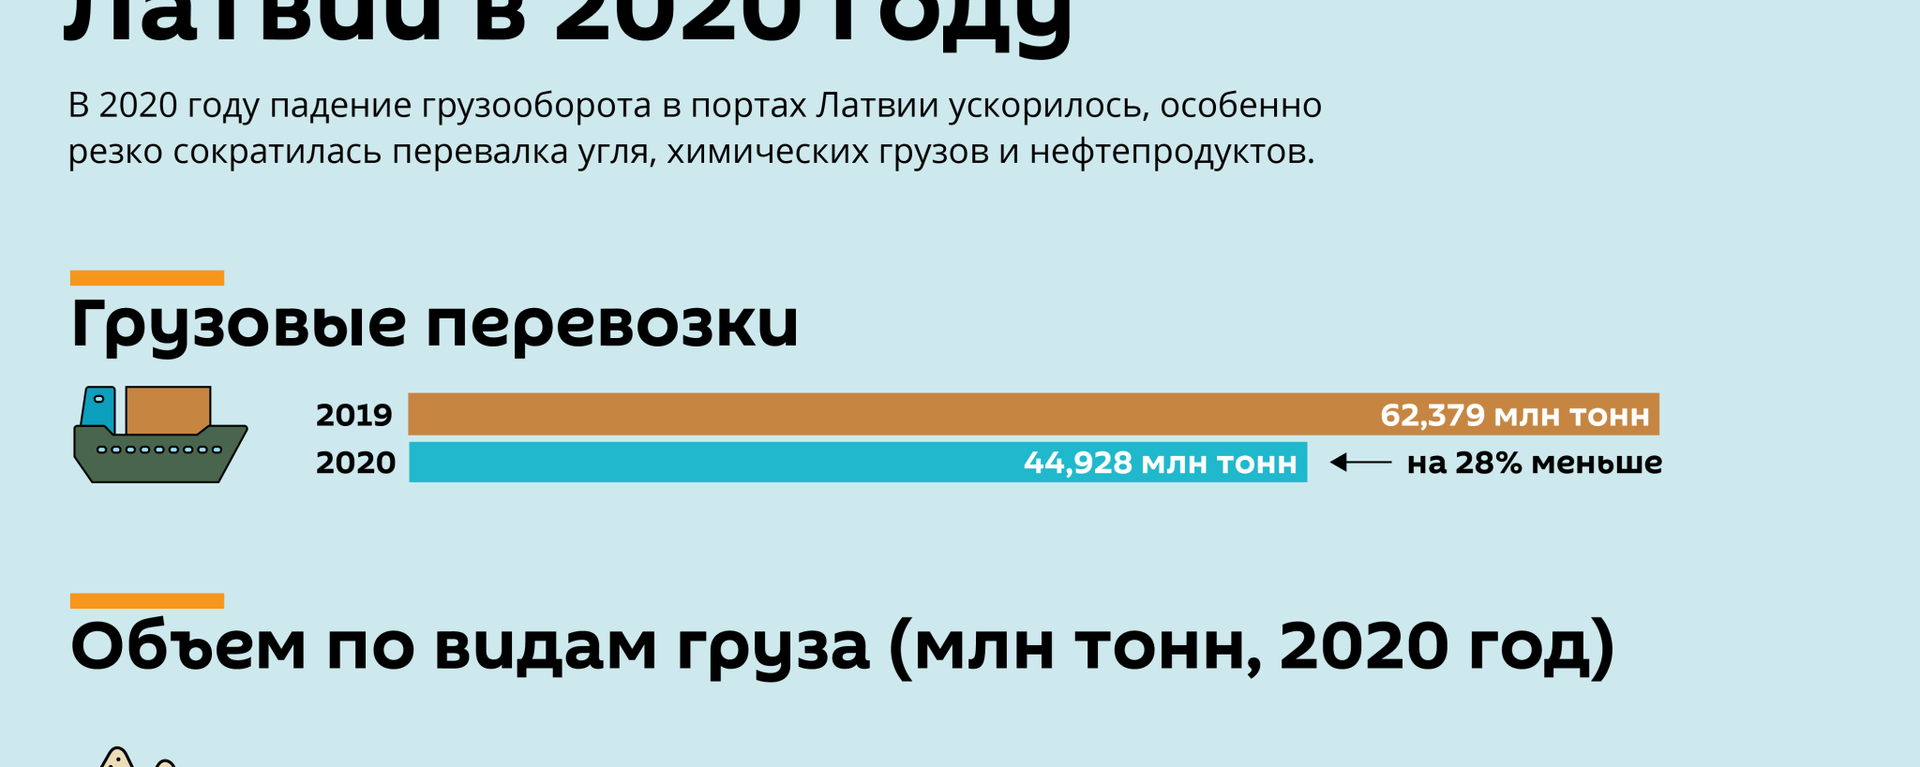 Обвал грузооборота портов Латвии в 2020 году - Sputnik Латвия, 1920, 02.02.2021